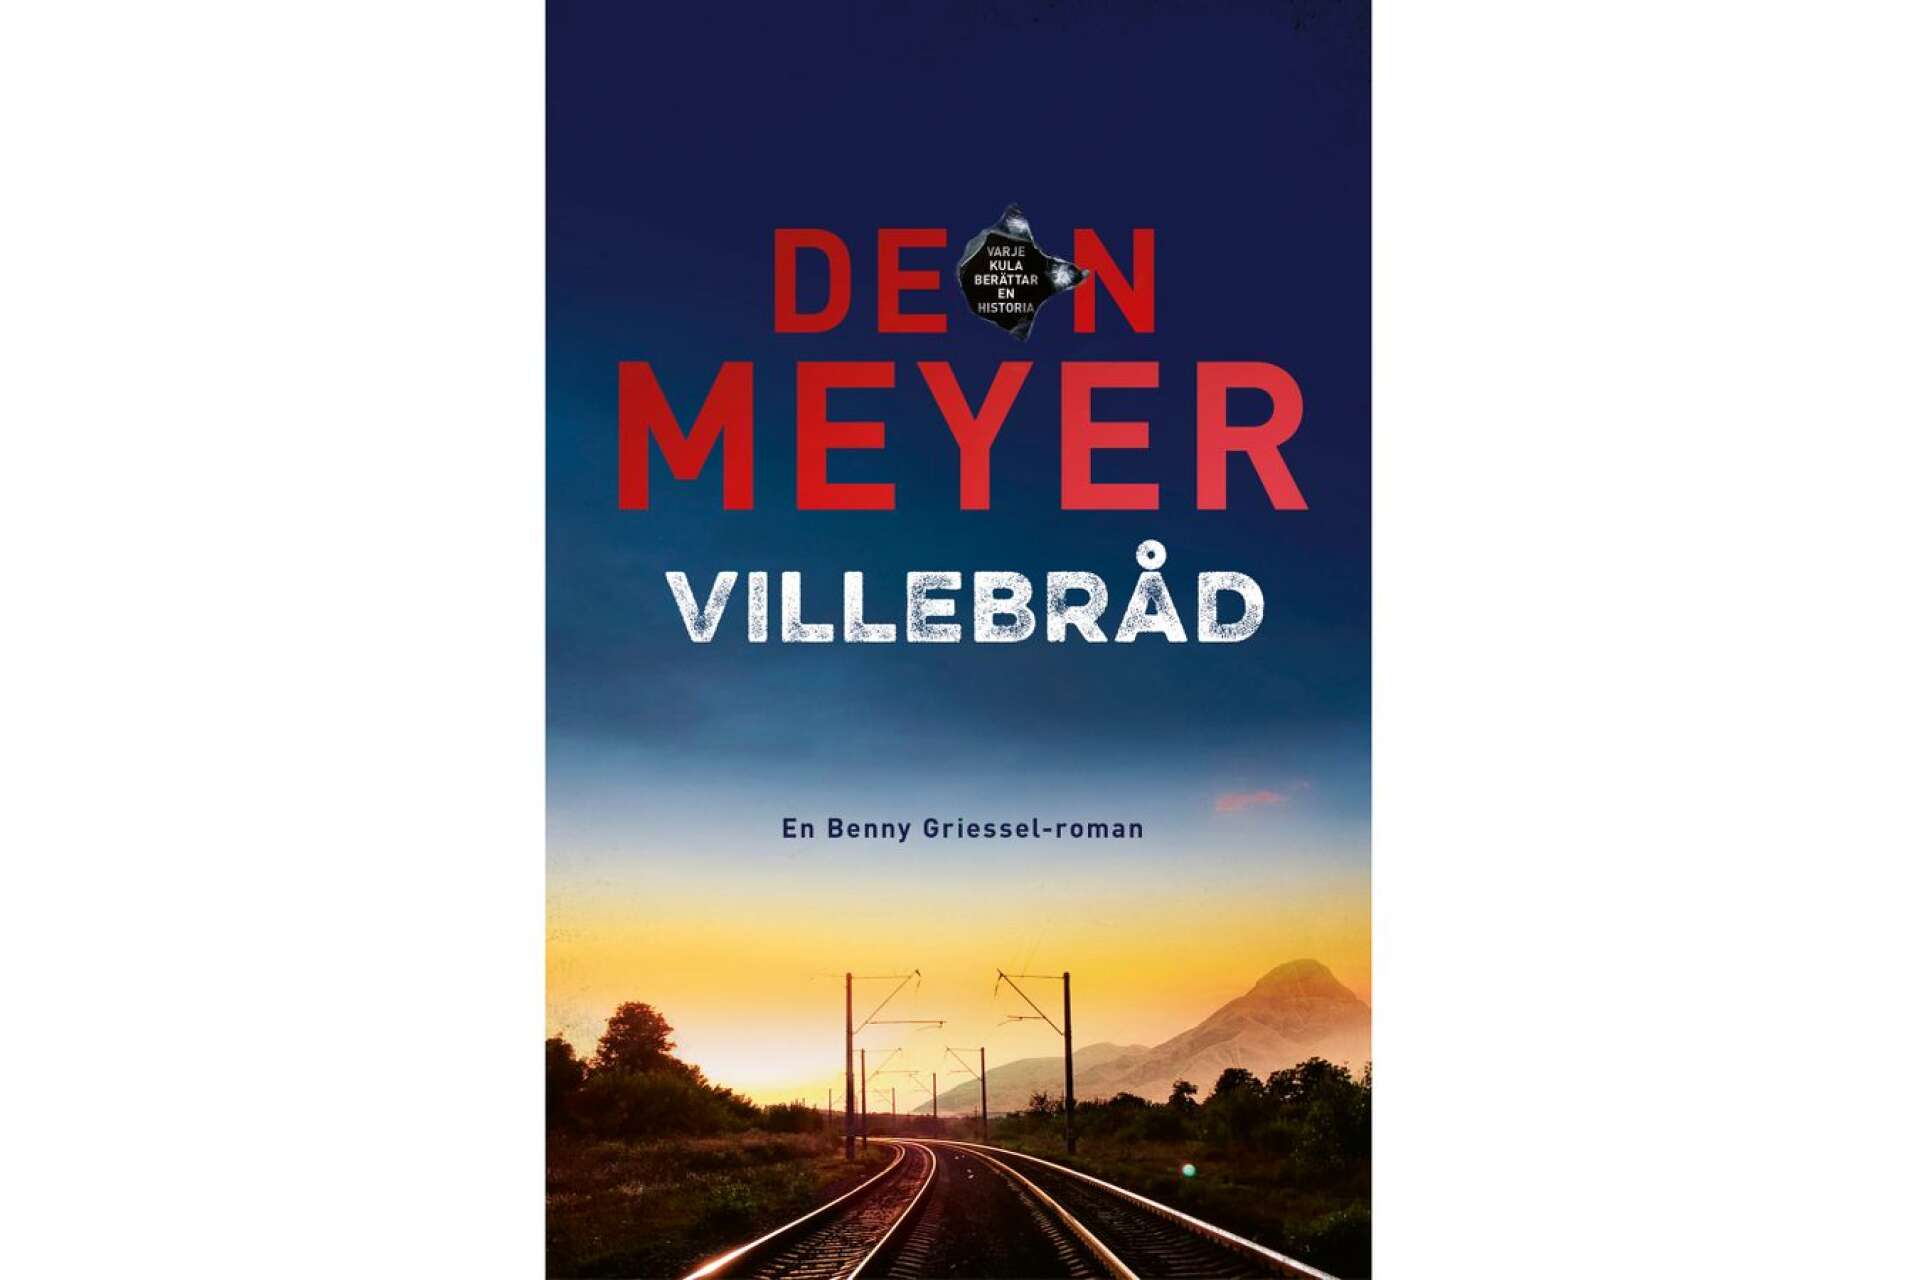 Titel: Villebråd Författare: Deon Meyer Översättare: Mia Gahne Förlag: Weyler